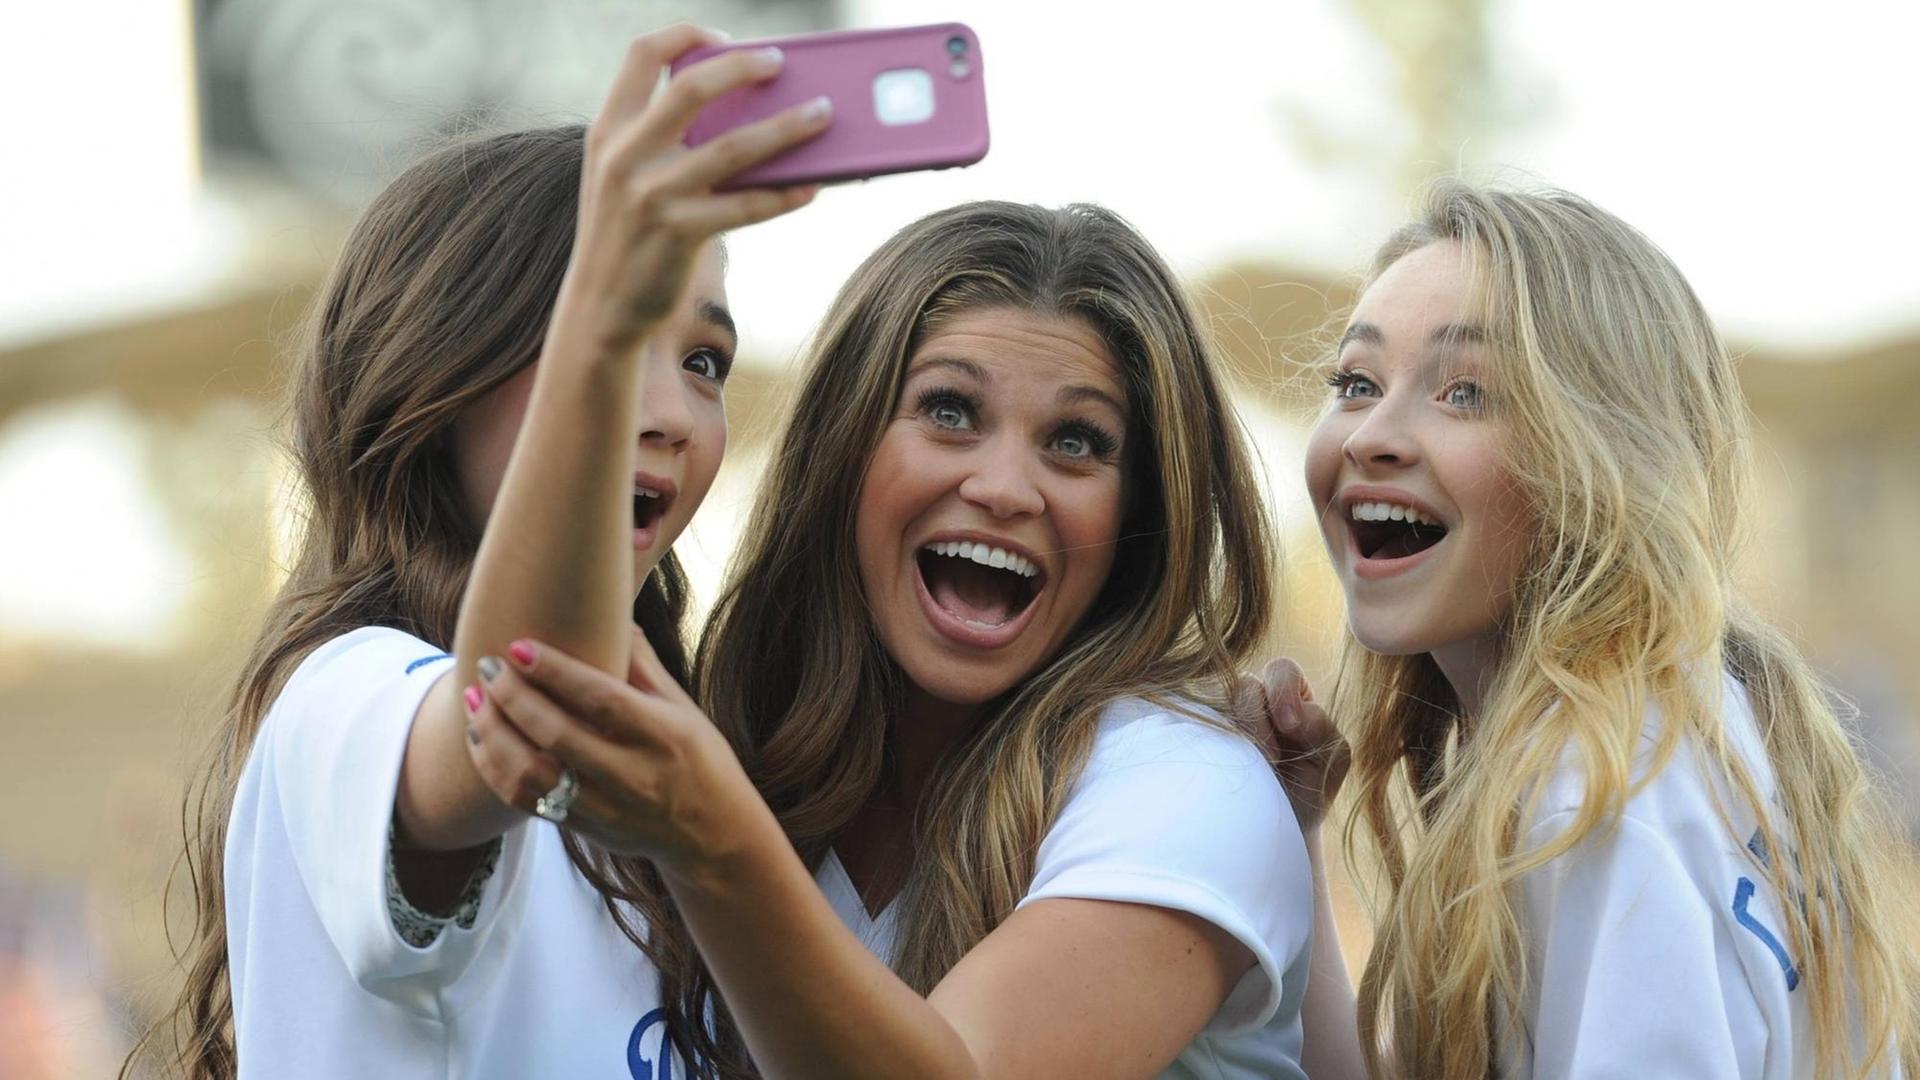 Die Darstellerinnen Sabrina Carpenter, Rowan Blanchard, and Danielle Fishelvon der Show "Girl Meets World" machen ein Selfie